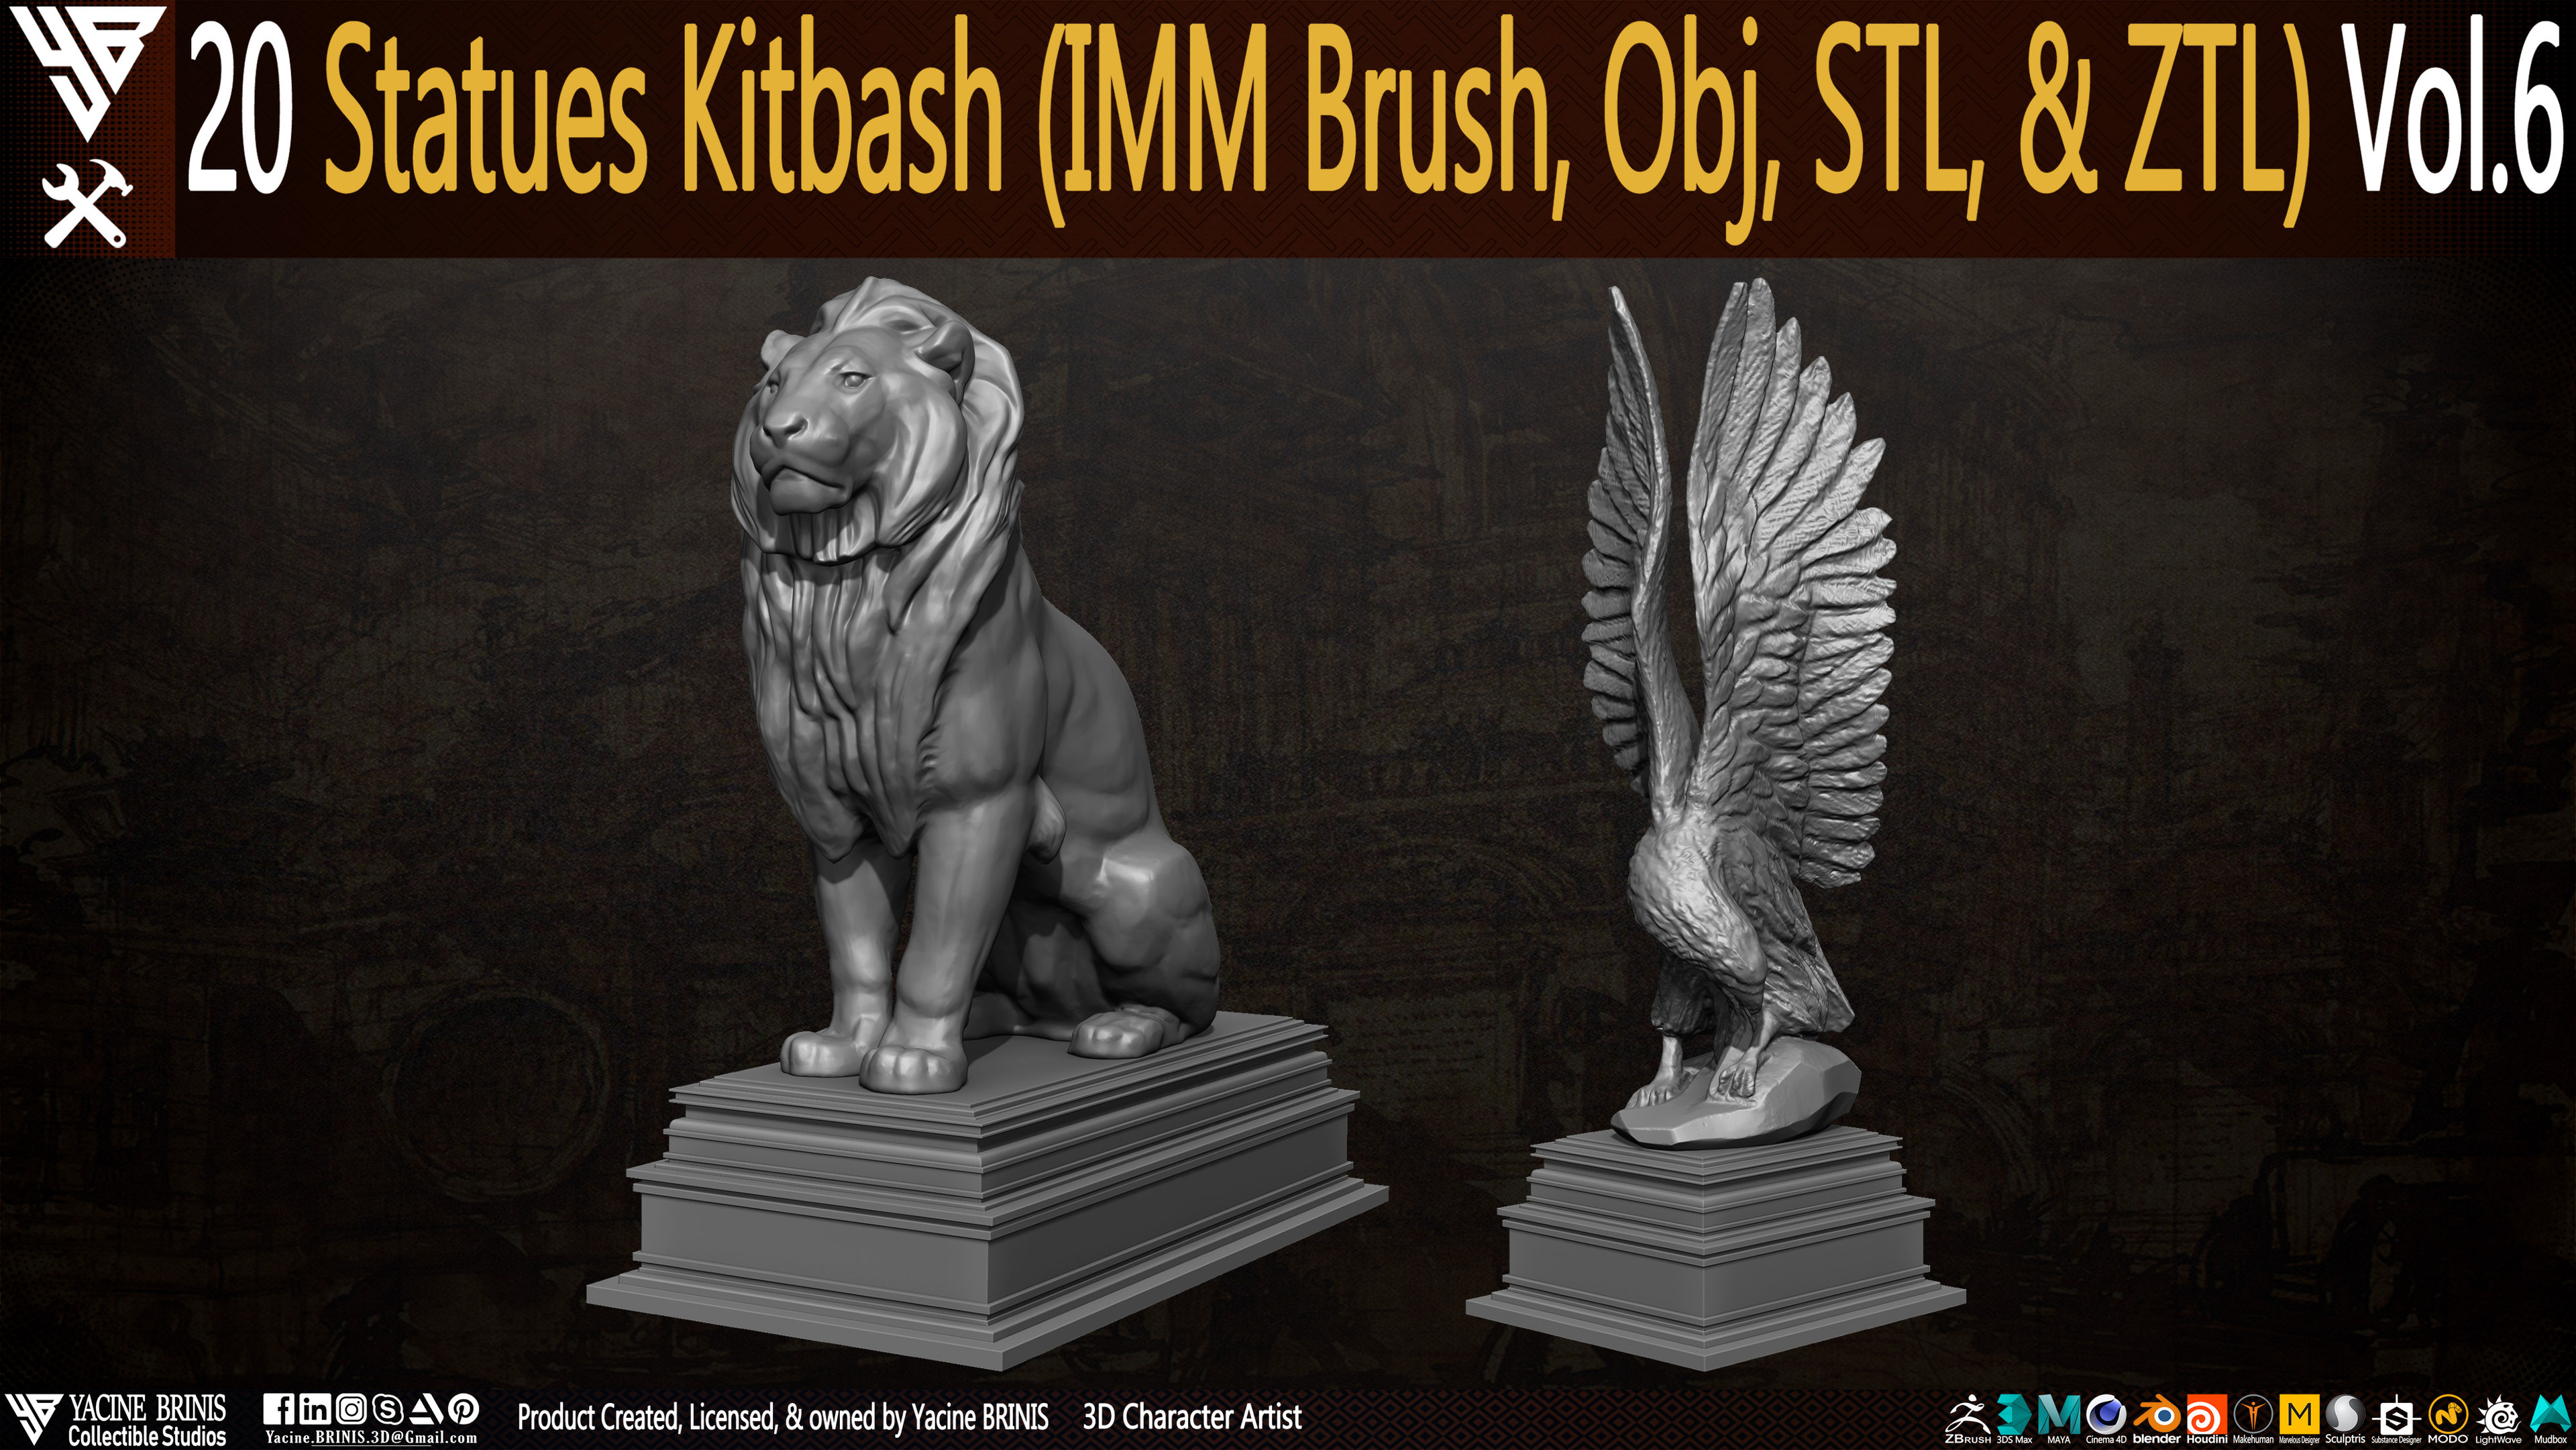 Statues Kitbash by yacine brinis Set 39